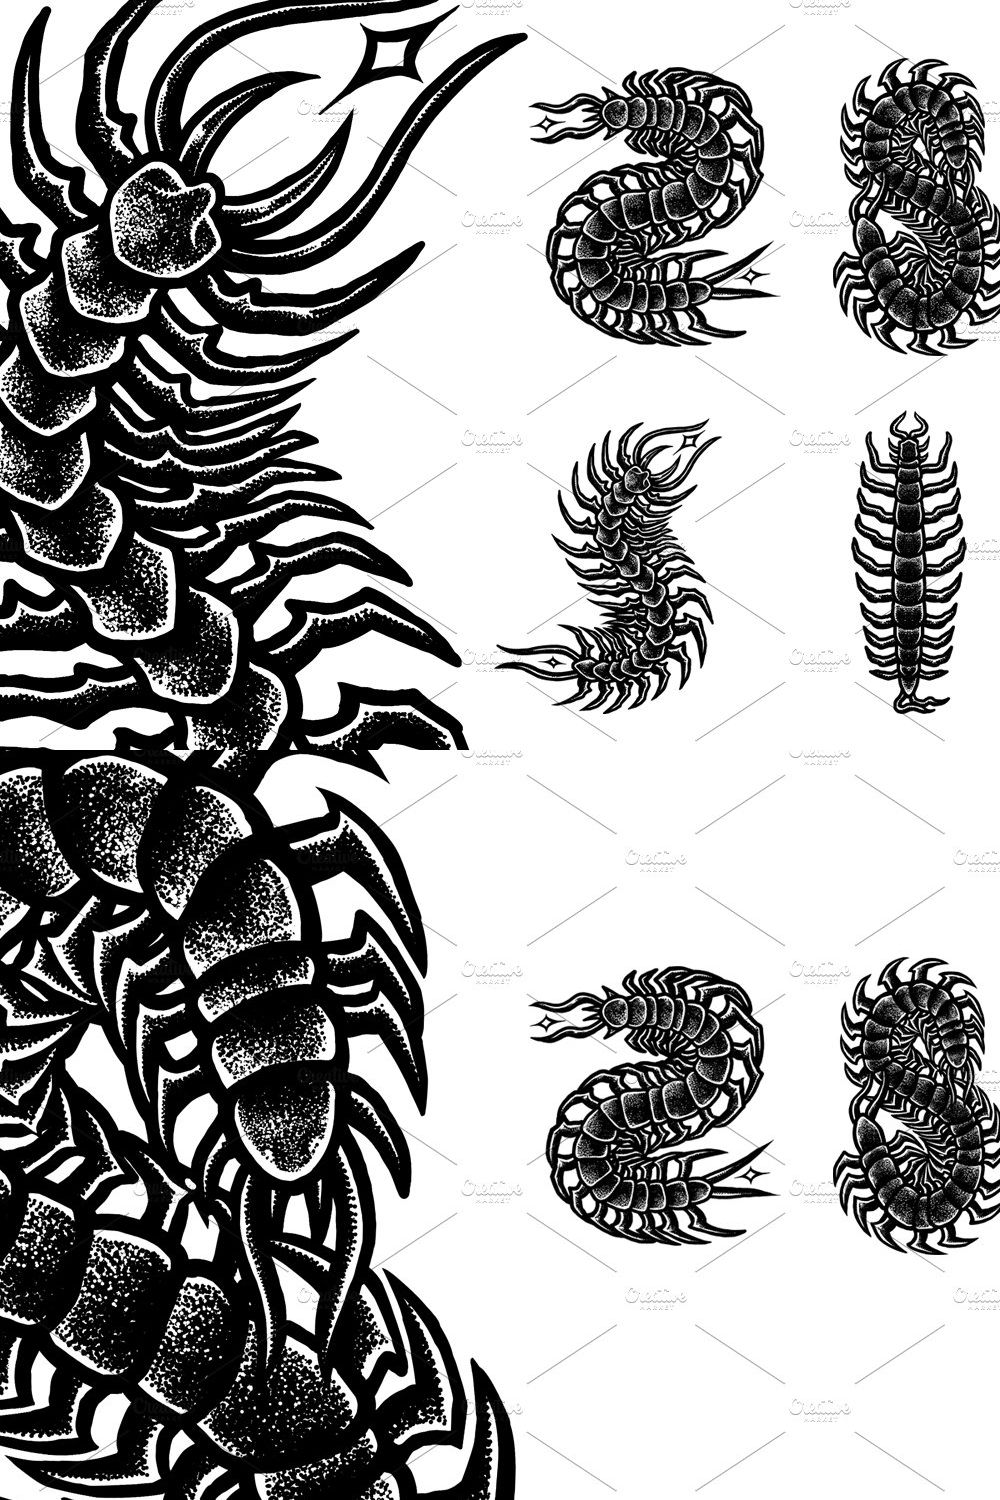 Centipede poisonous | Merch designs pinterest preview image.